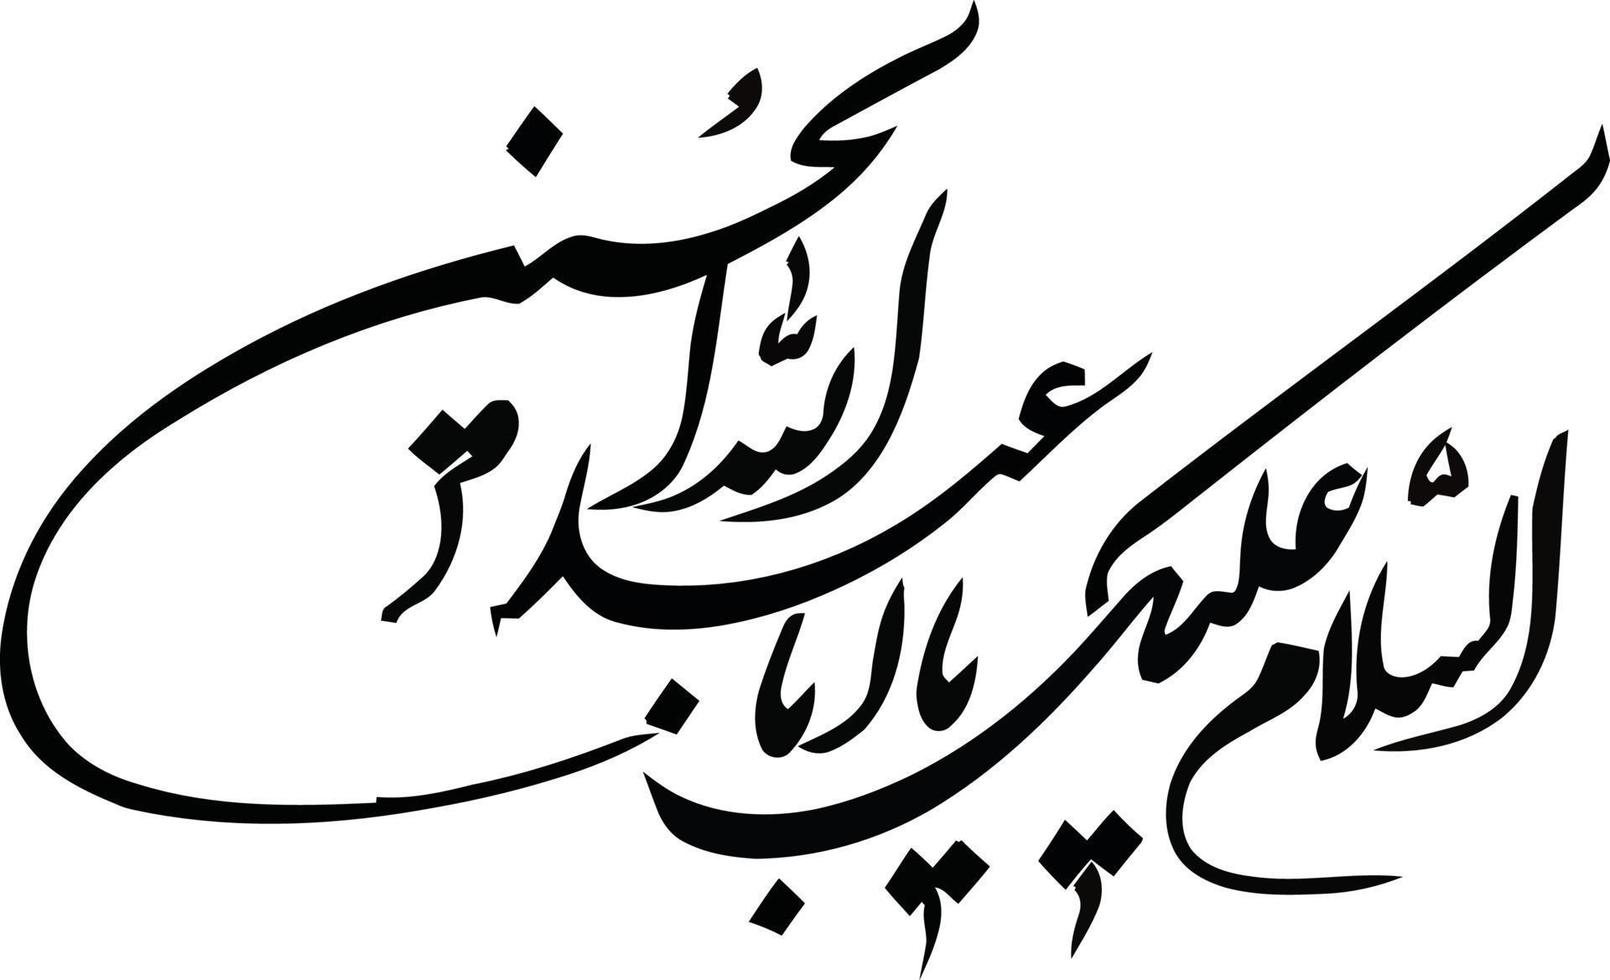 slam titre calligraphie islamique vecteur gratuit